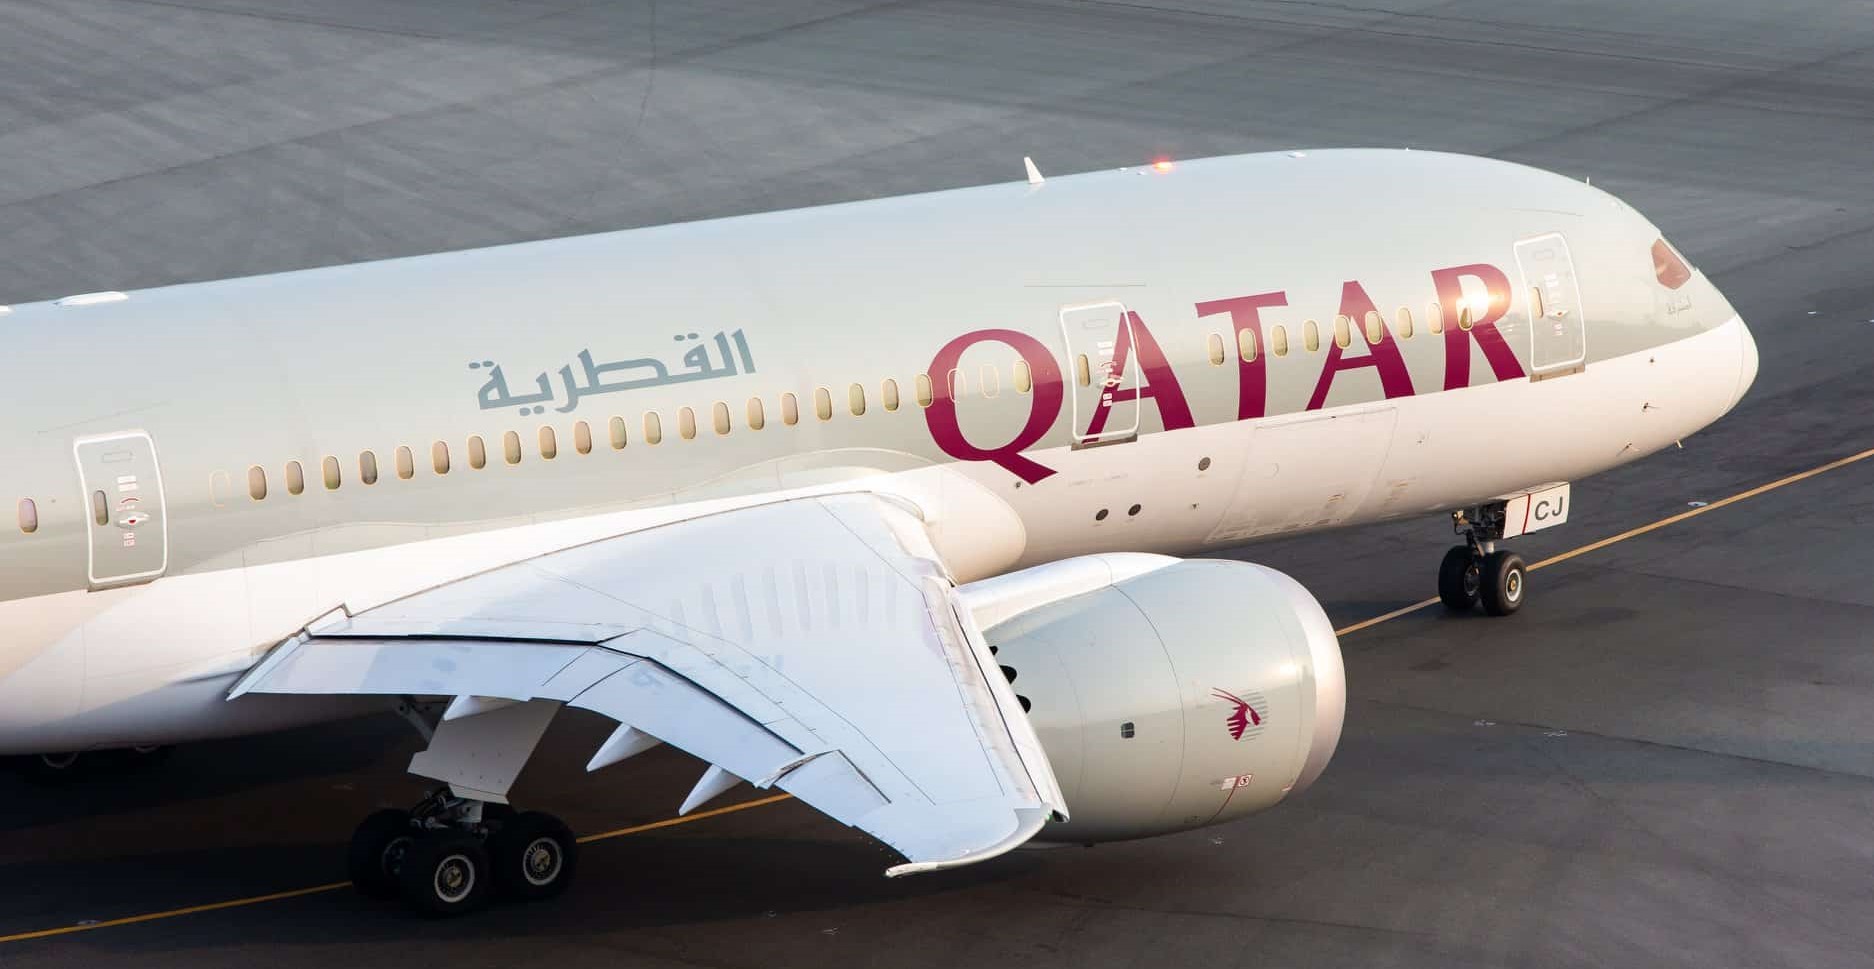 Ντόχα: Αντιδράσεις για την ιατρική εξέταση και τον γυμνό σωματικό έλεγχο σε γυναίκες πριν από πτήση της Qatar Airways